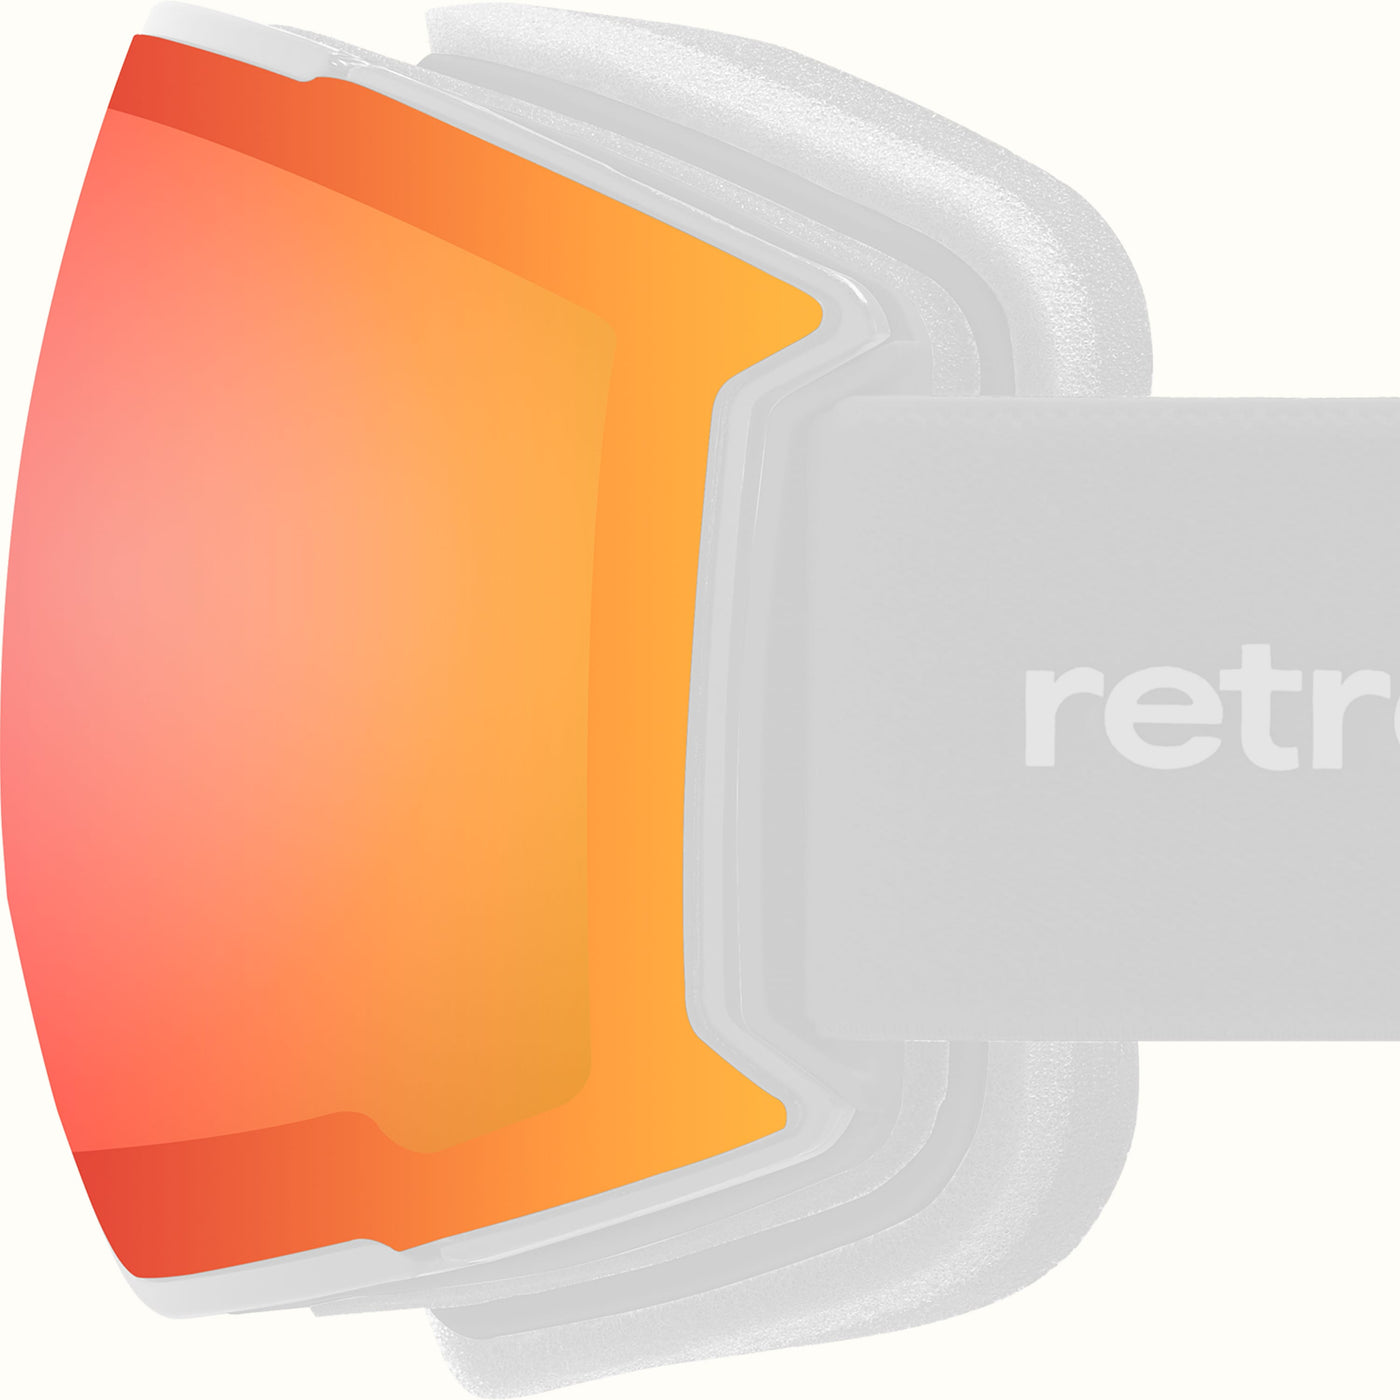 Zenith Goggles Magnetic Lens | Jasper